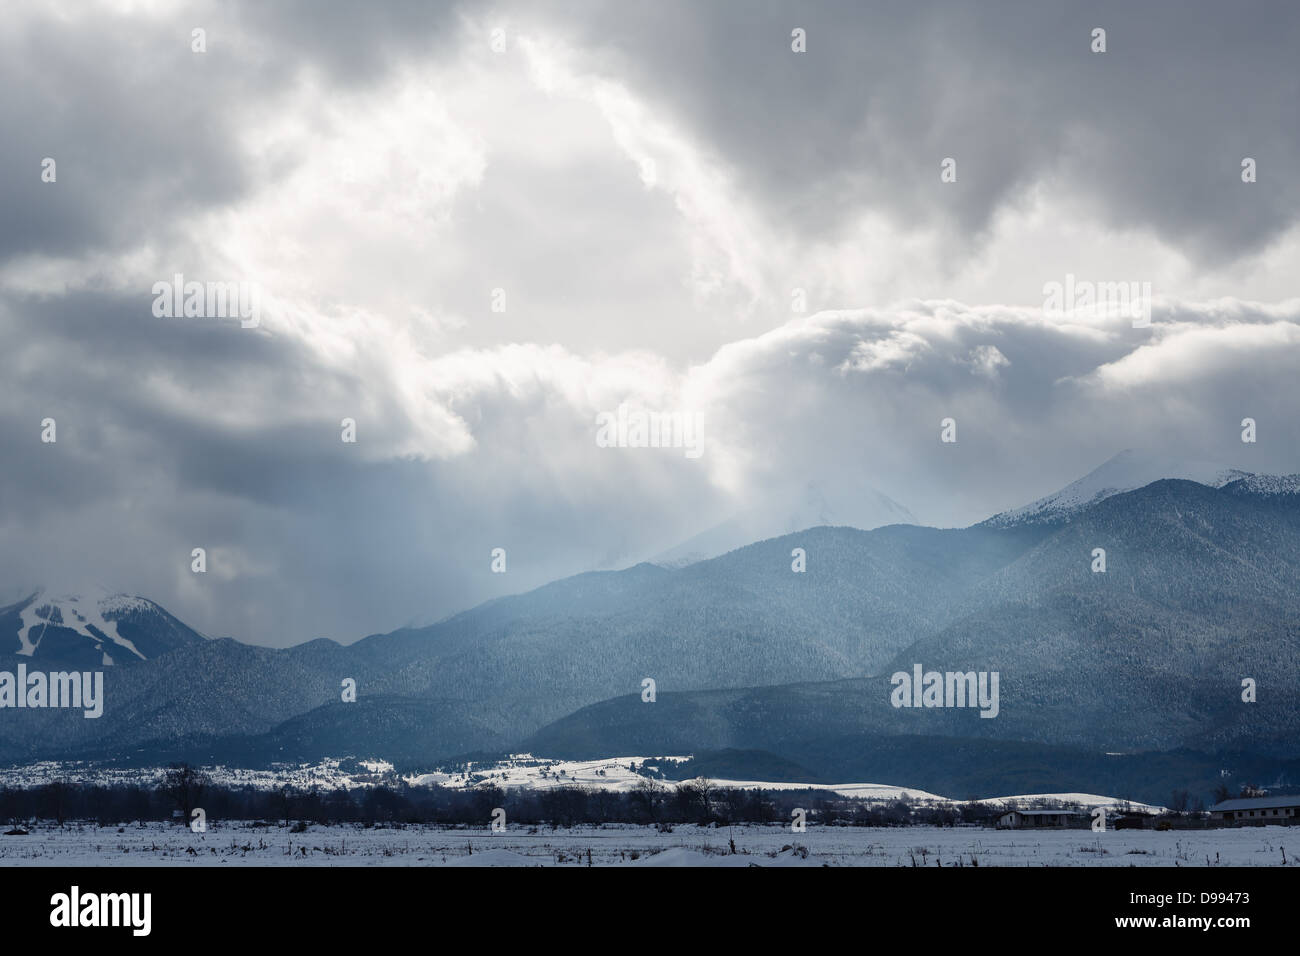 Glänzen Sie in Wolken von einem Schneesturm über Berge Stockfoto